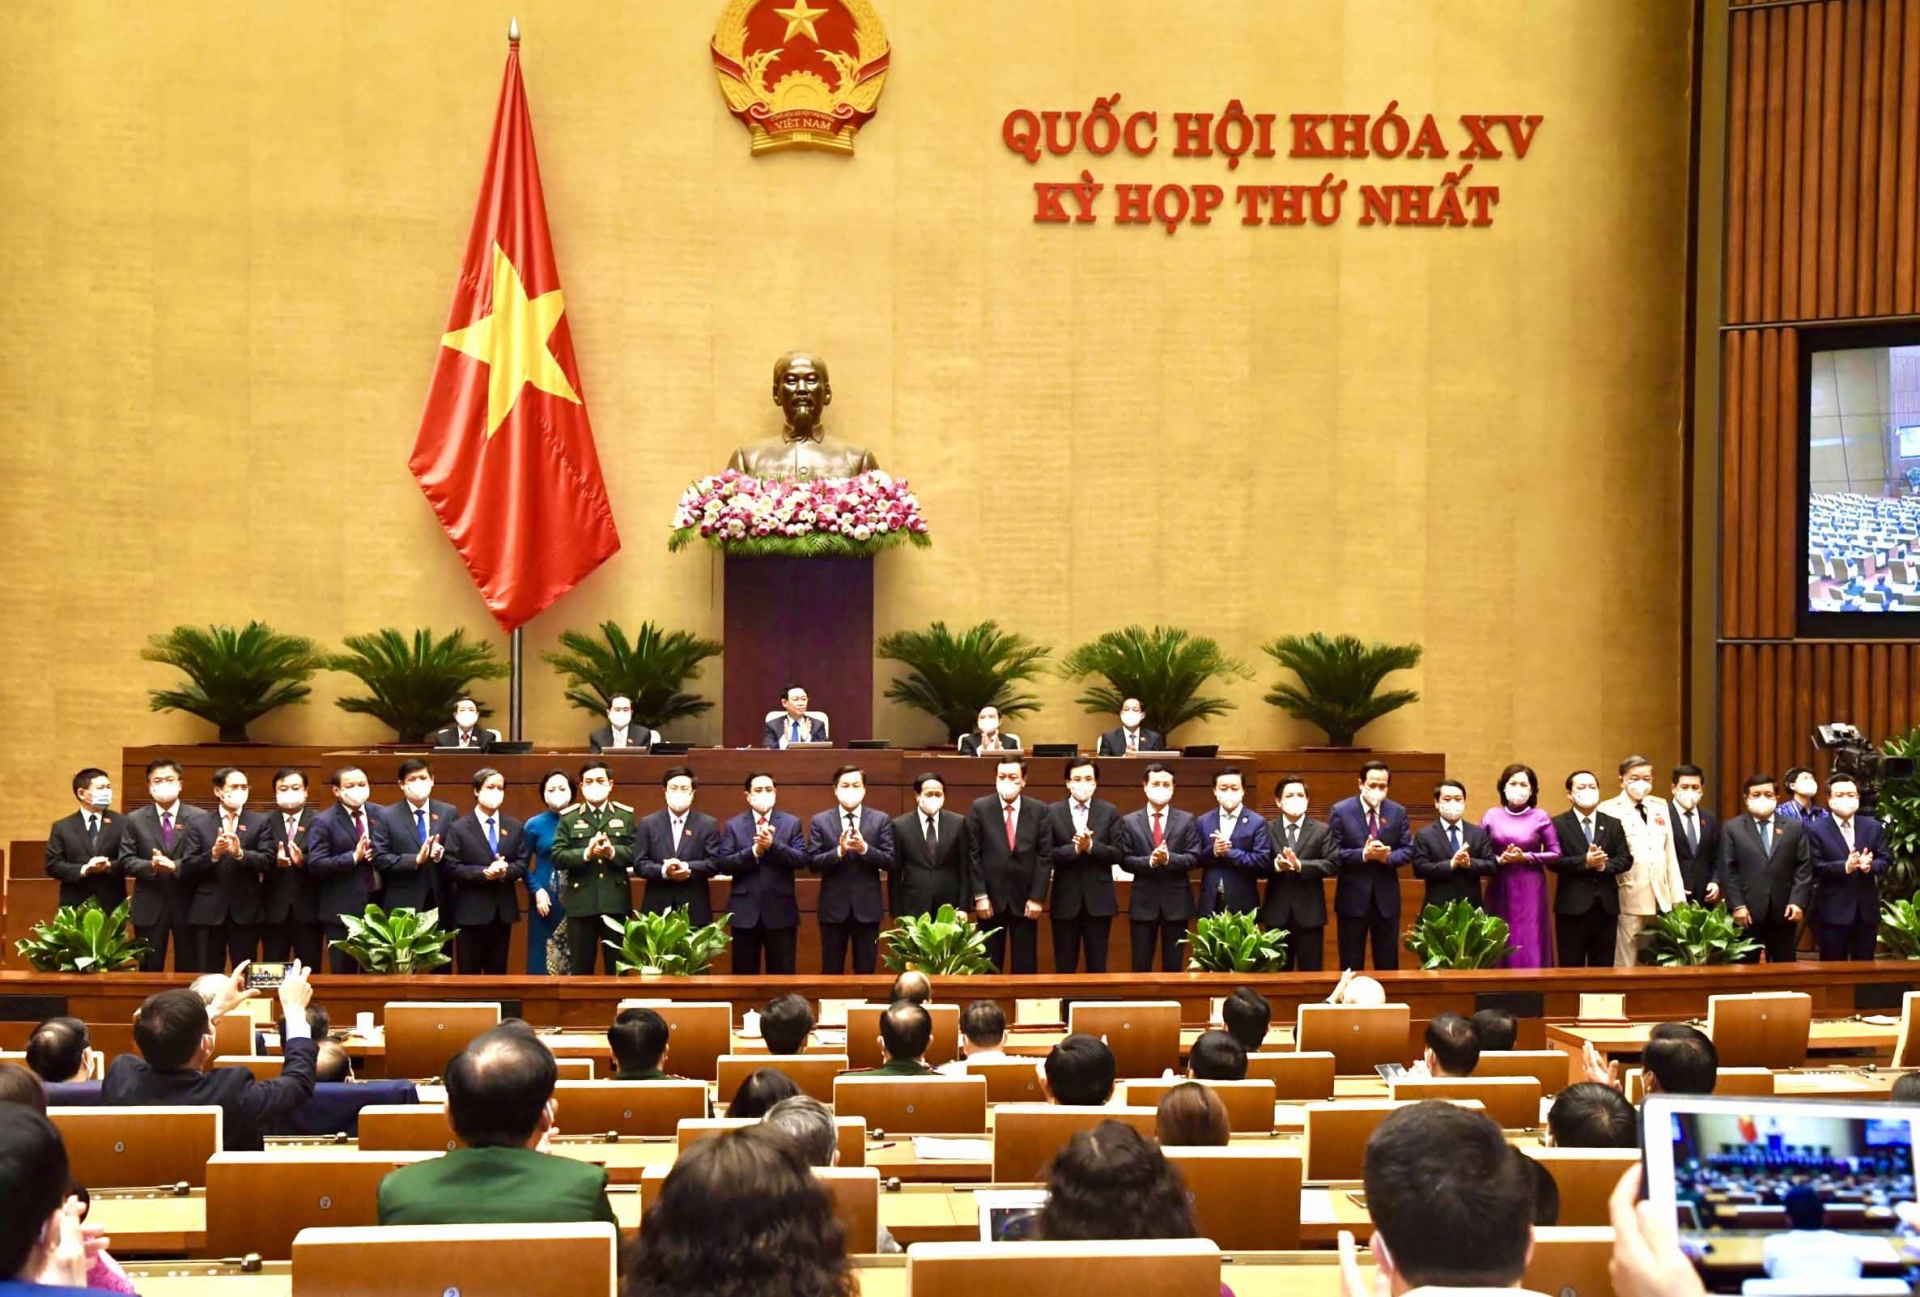 Thủ tướng Chính phủ cùng các Phó Thủ tướng, Bộ trưởng và các thành viên khác của Chính phủ ra mắt Quốc hội chiều 28/7.